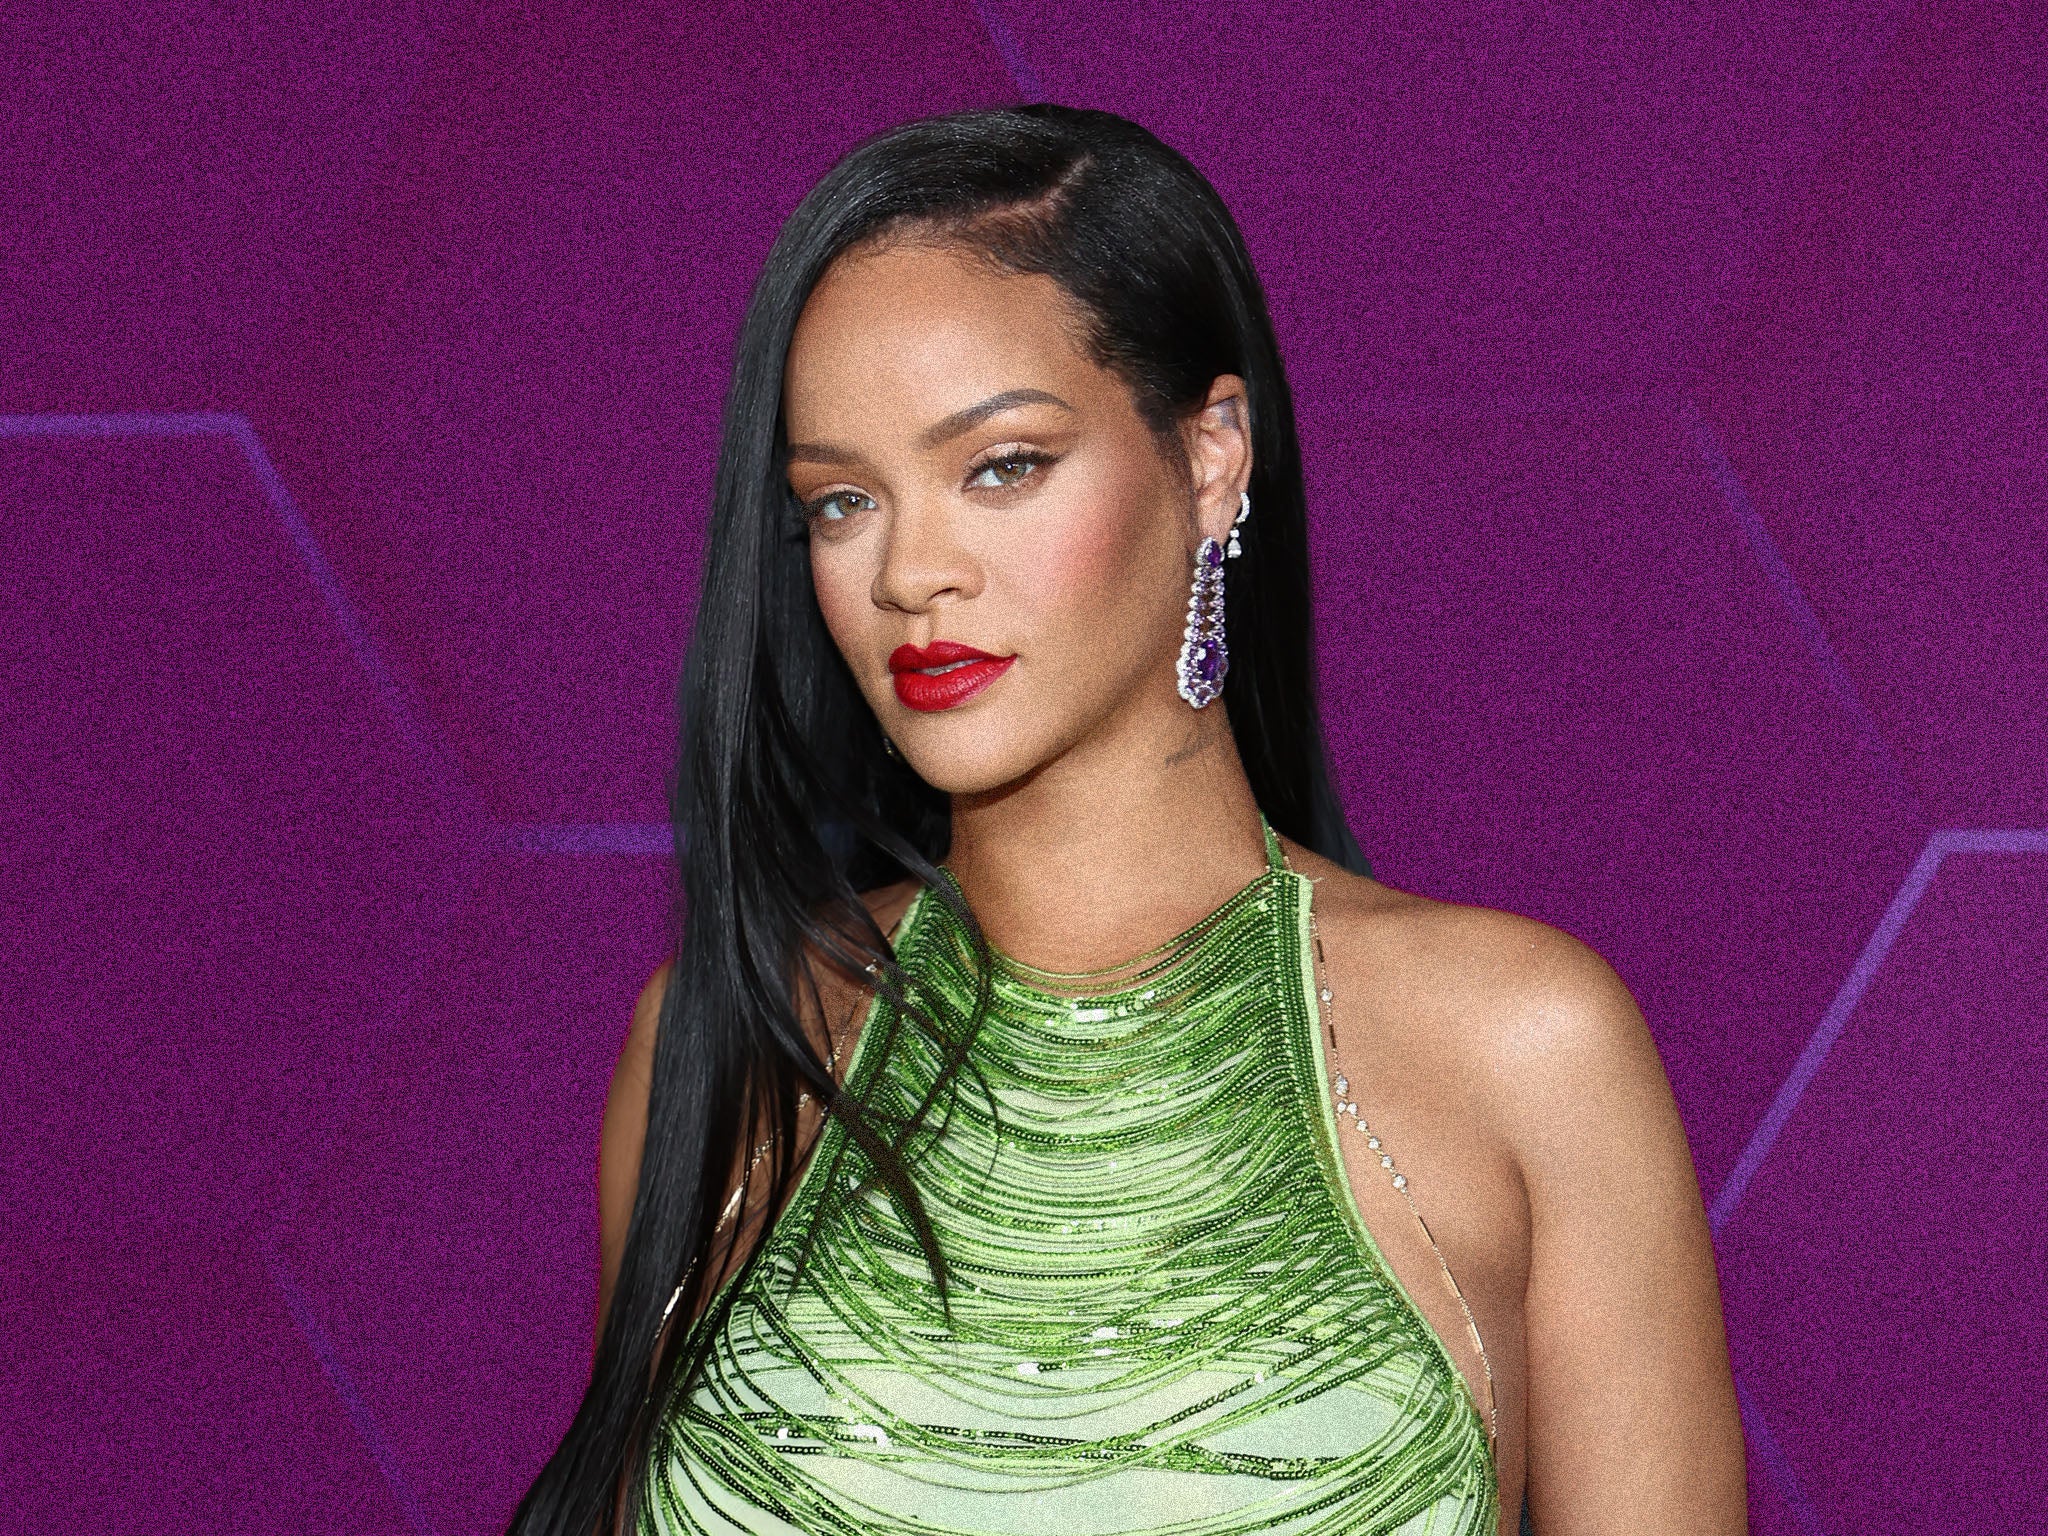 Alabar el cuerpo de Rihanna luego de su embarazo tal vez no sea lo mejor para el debate de los cuerpos y la belleza